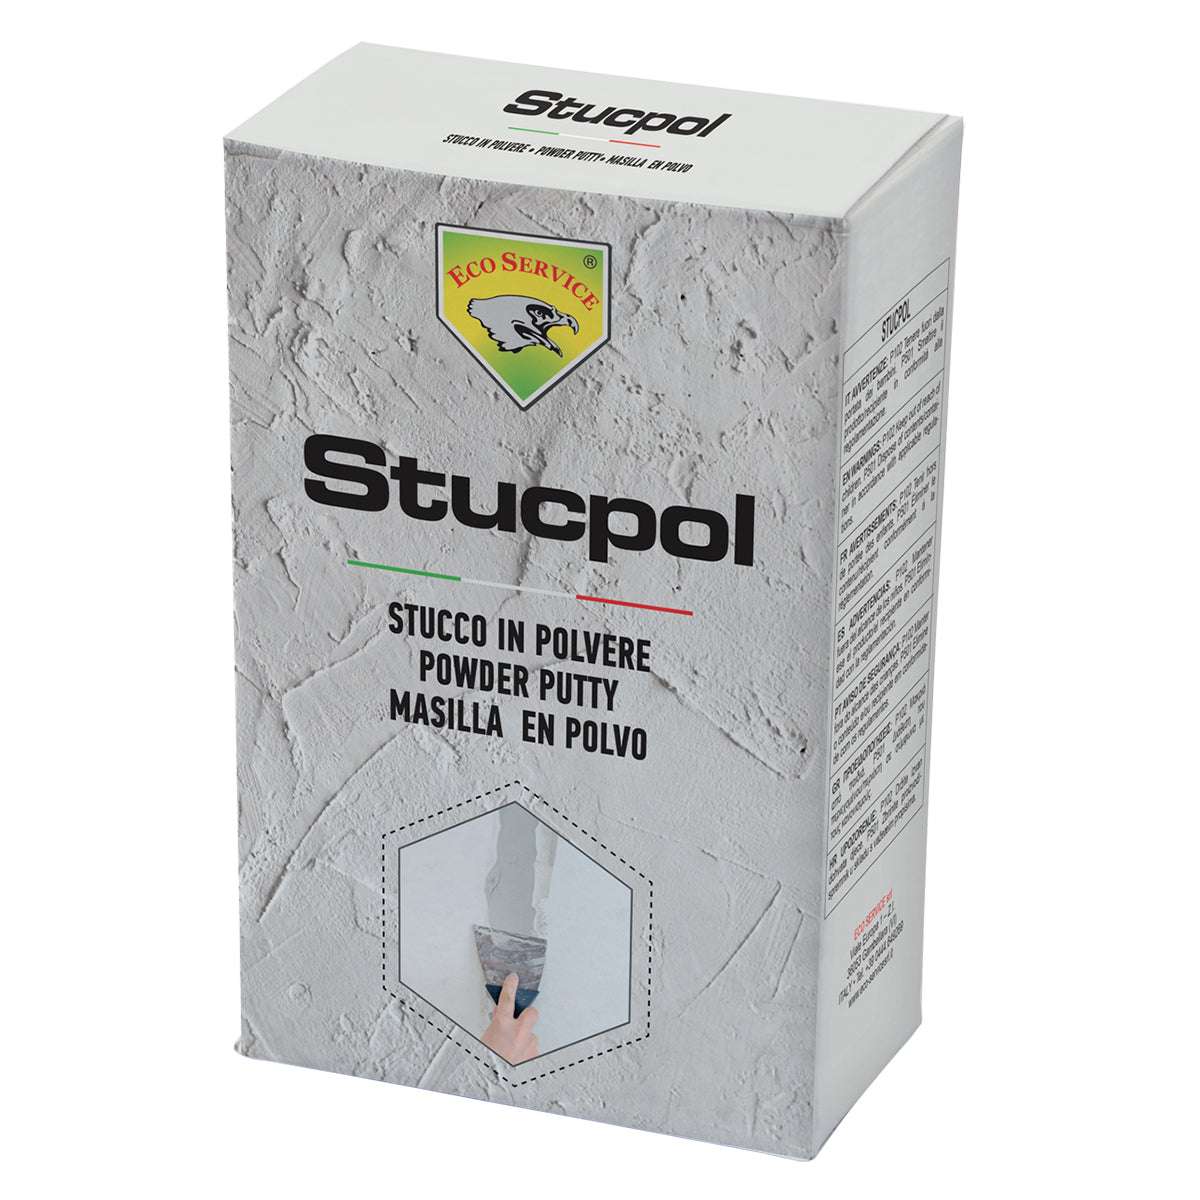 Stucco in polvere STUCPOL 1kg ottima adesione al supporto e resistenza meccanica